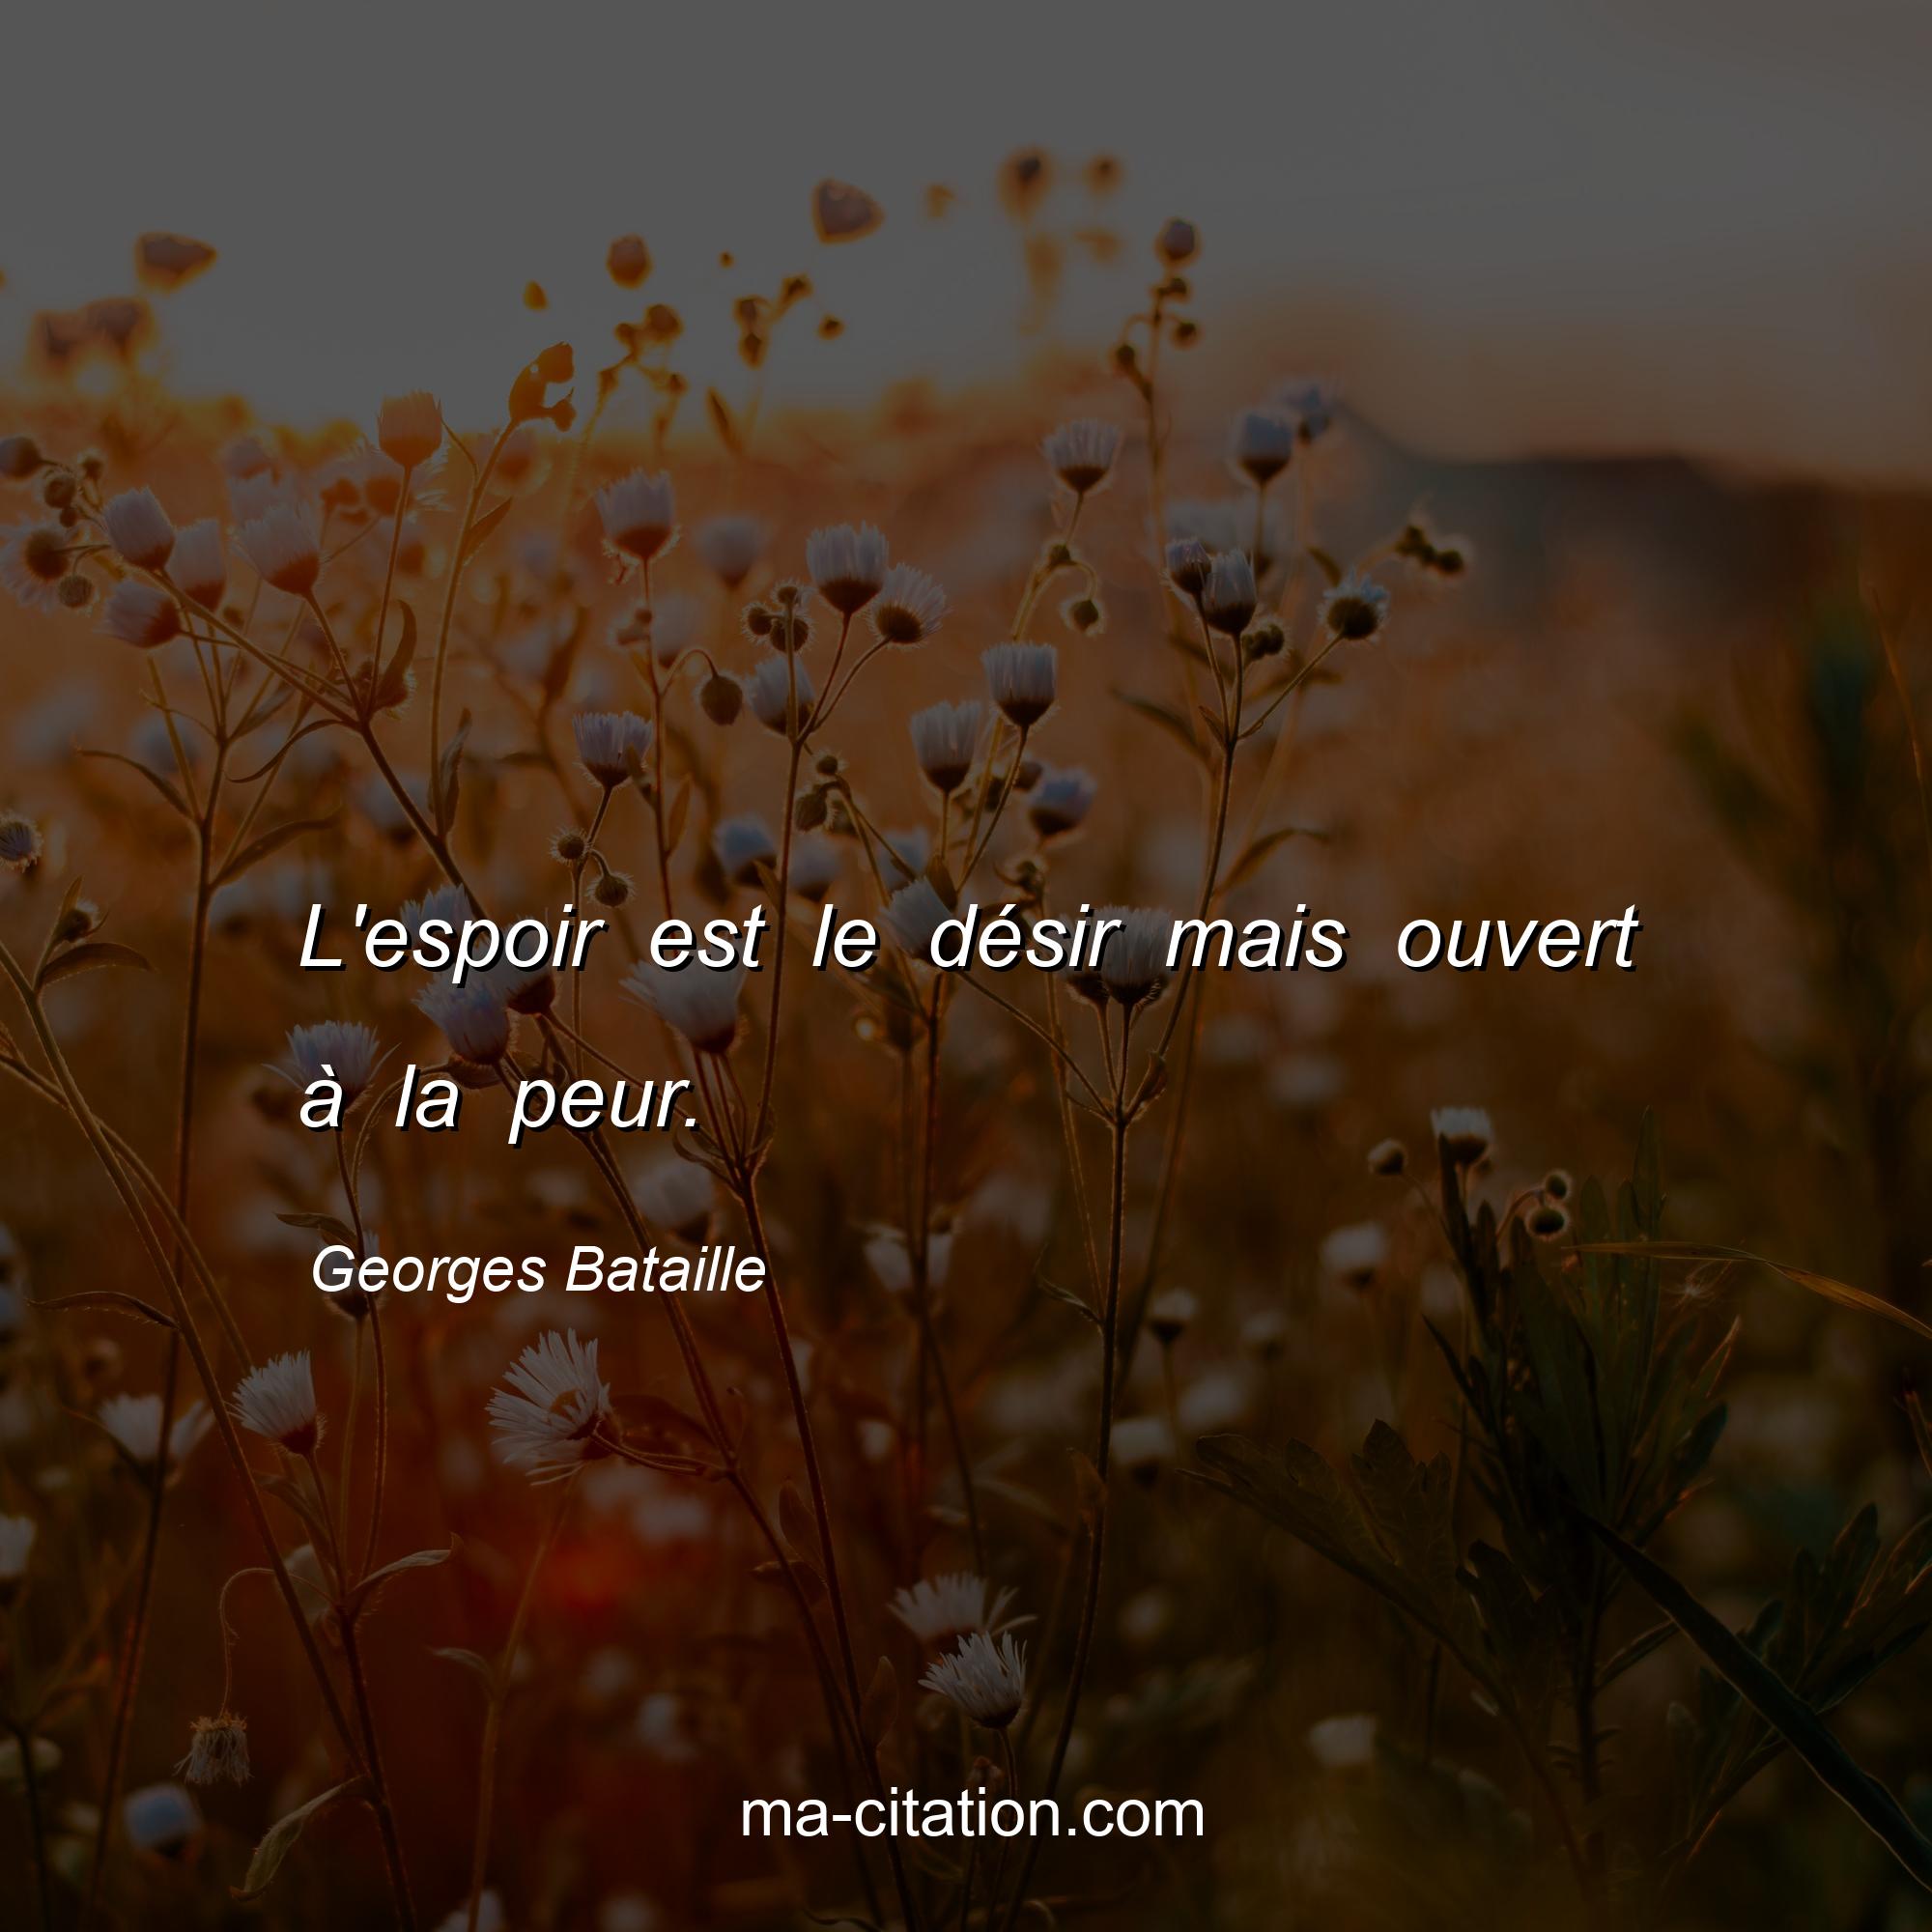 Georges Bataille : L'espoir est le désir mais ouvert à la peur.